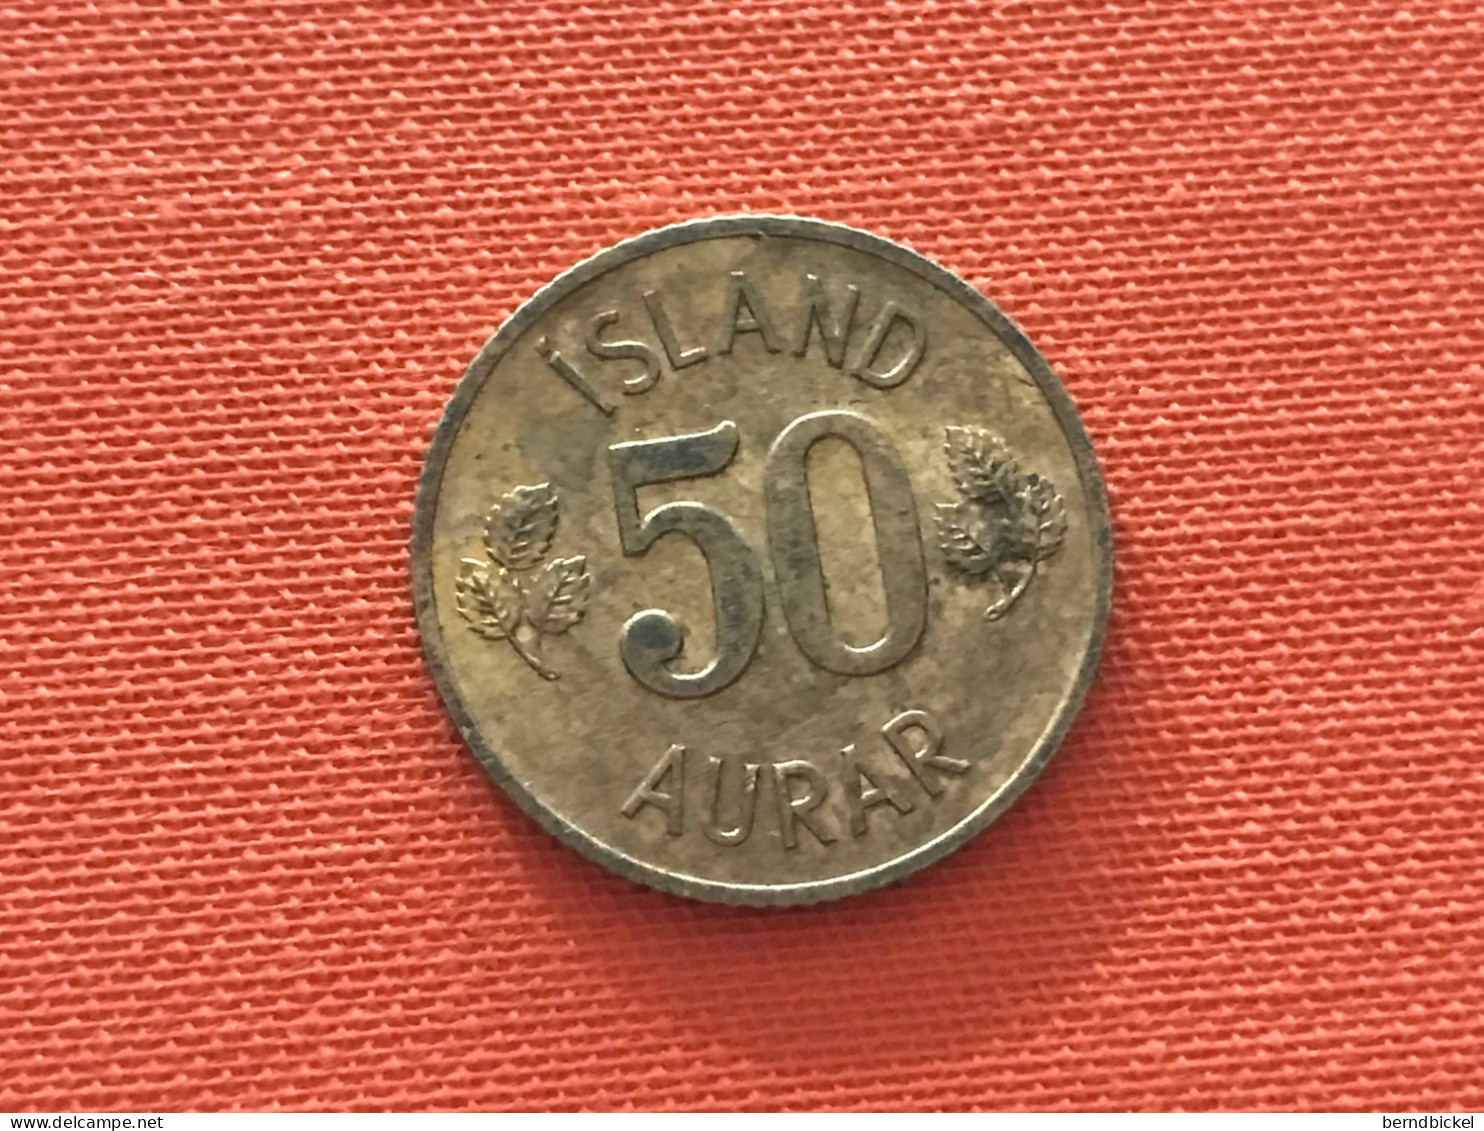 Münze Münzen Umlaufmünze Island 50 Aurar 1971 - Islande